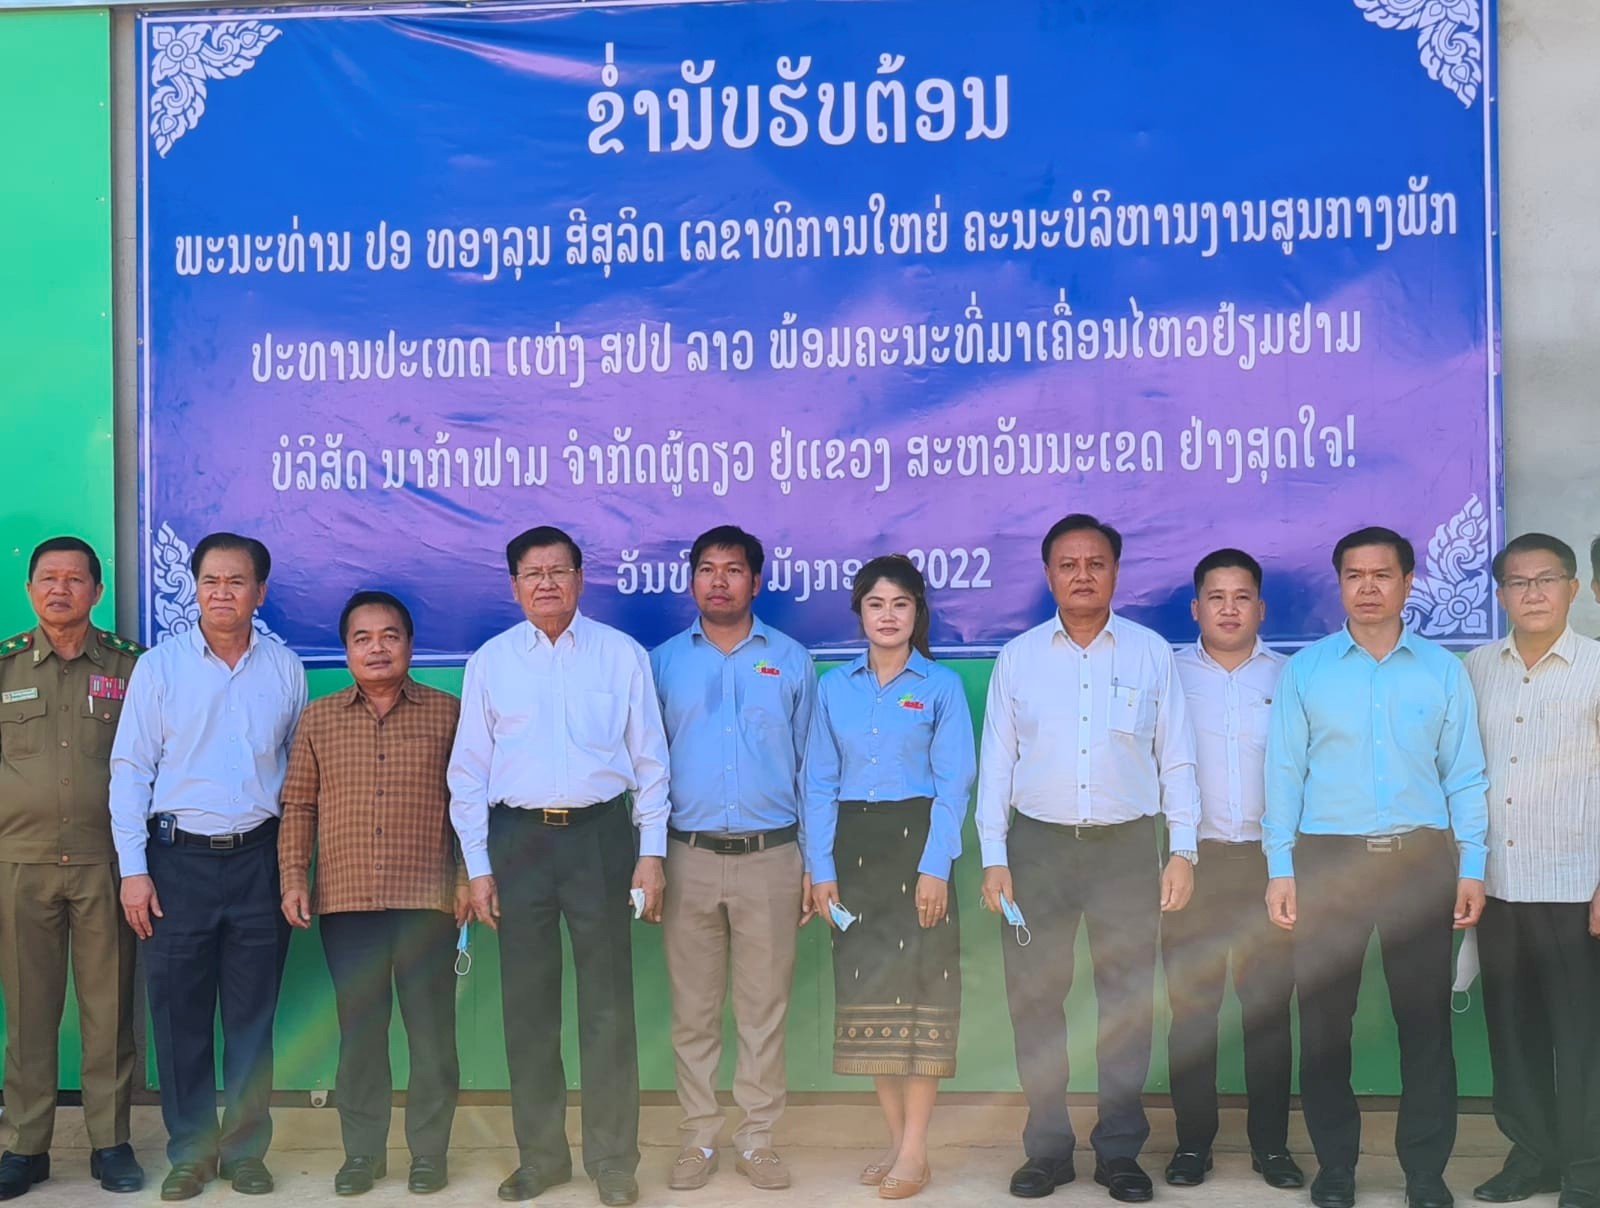 Anh Ngân Văn Hùng (thứ 6 từ phải sang) đứng cạnh Tổng bí thư, Chủ tịch nước Thongloun Sisoulith (thứ 7 từ phải sang) cùng đoàn công tác chụp ảnh lưu niệm ở NAKA FARM